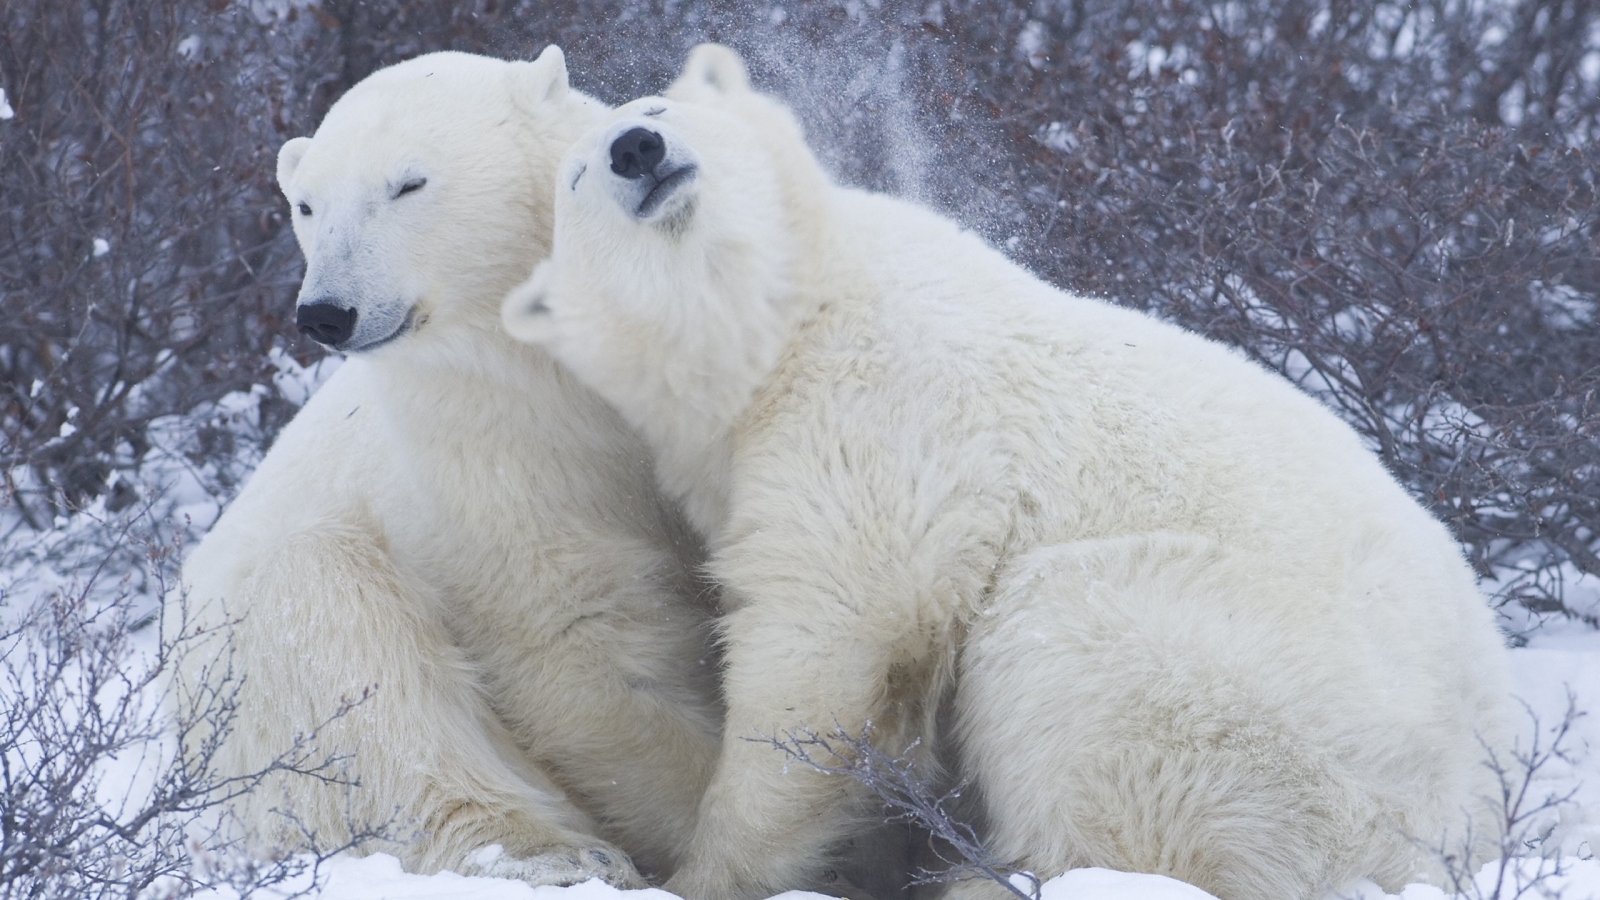 Cute Polar Bears for 1600 x 900 HDTV resolution